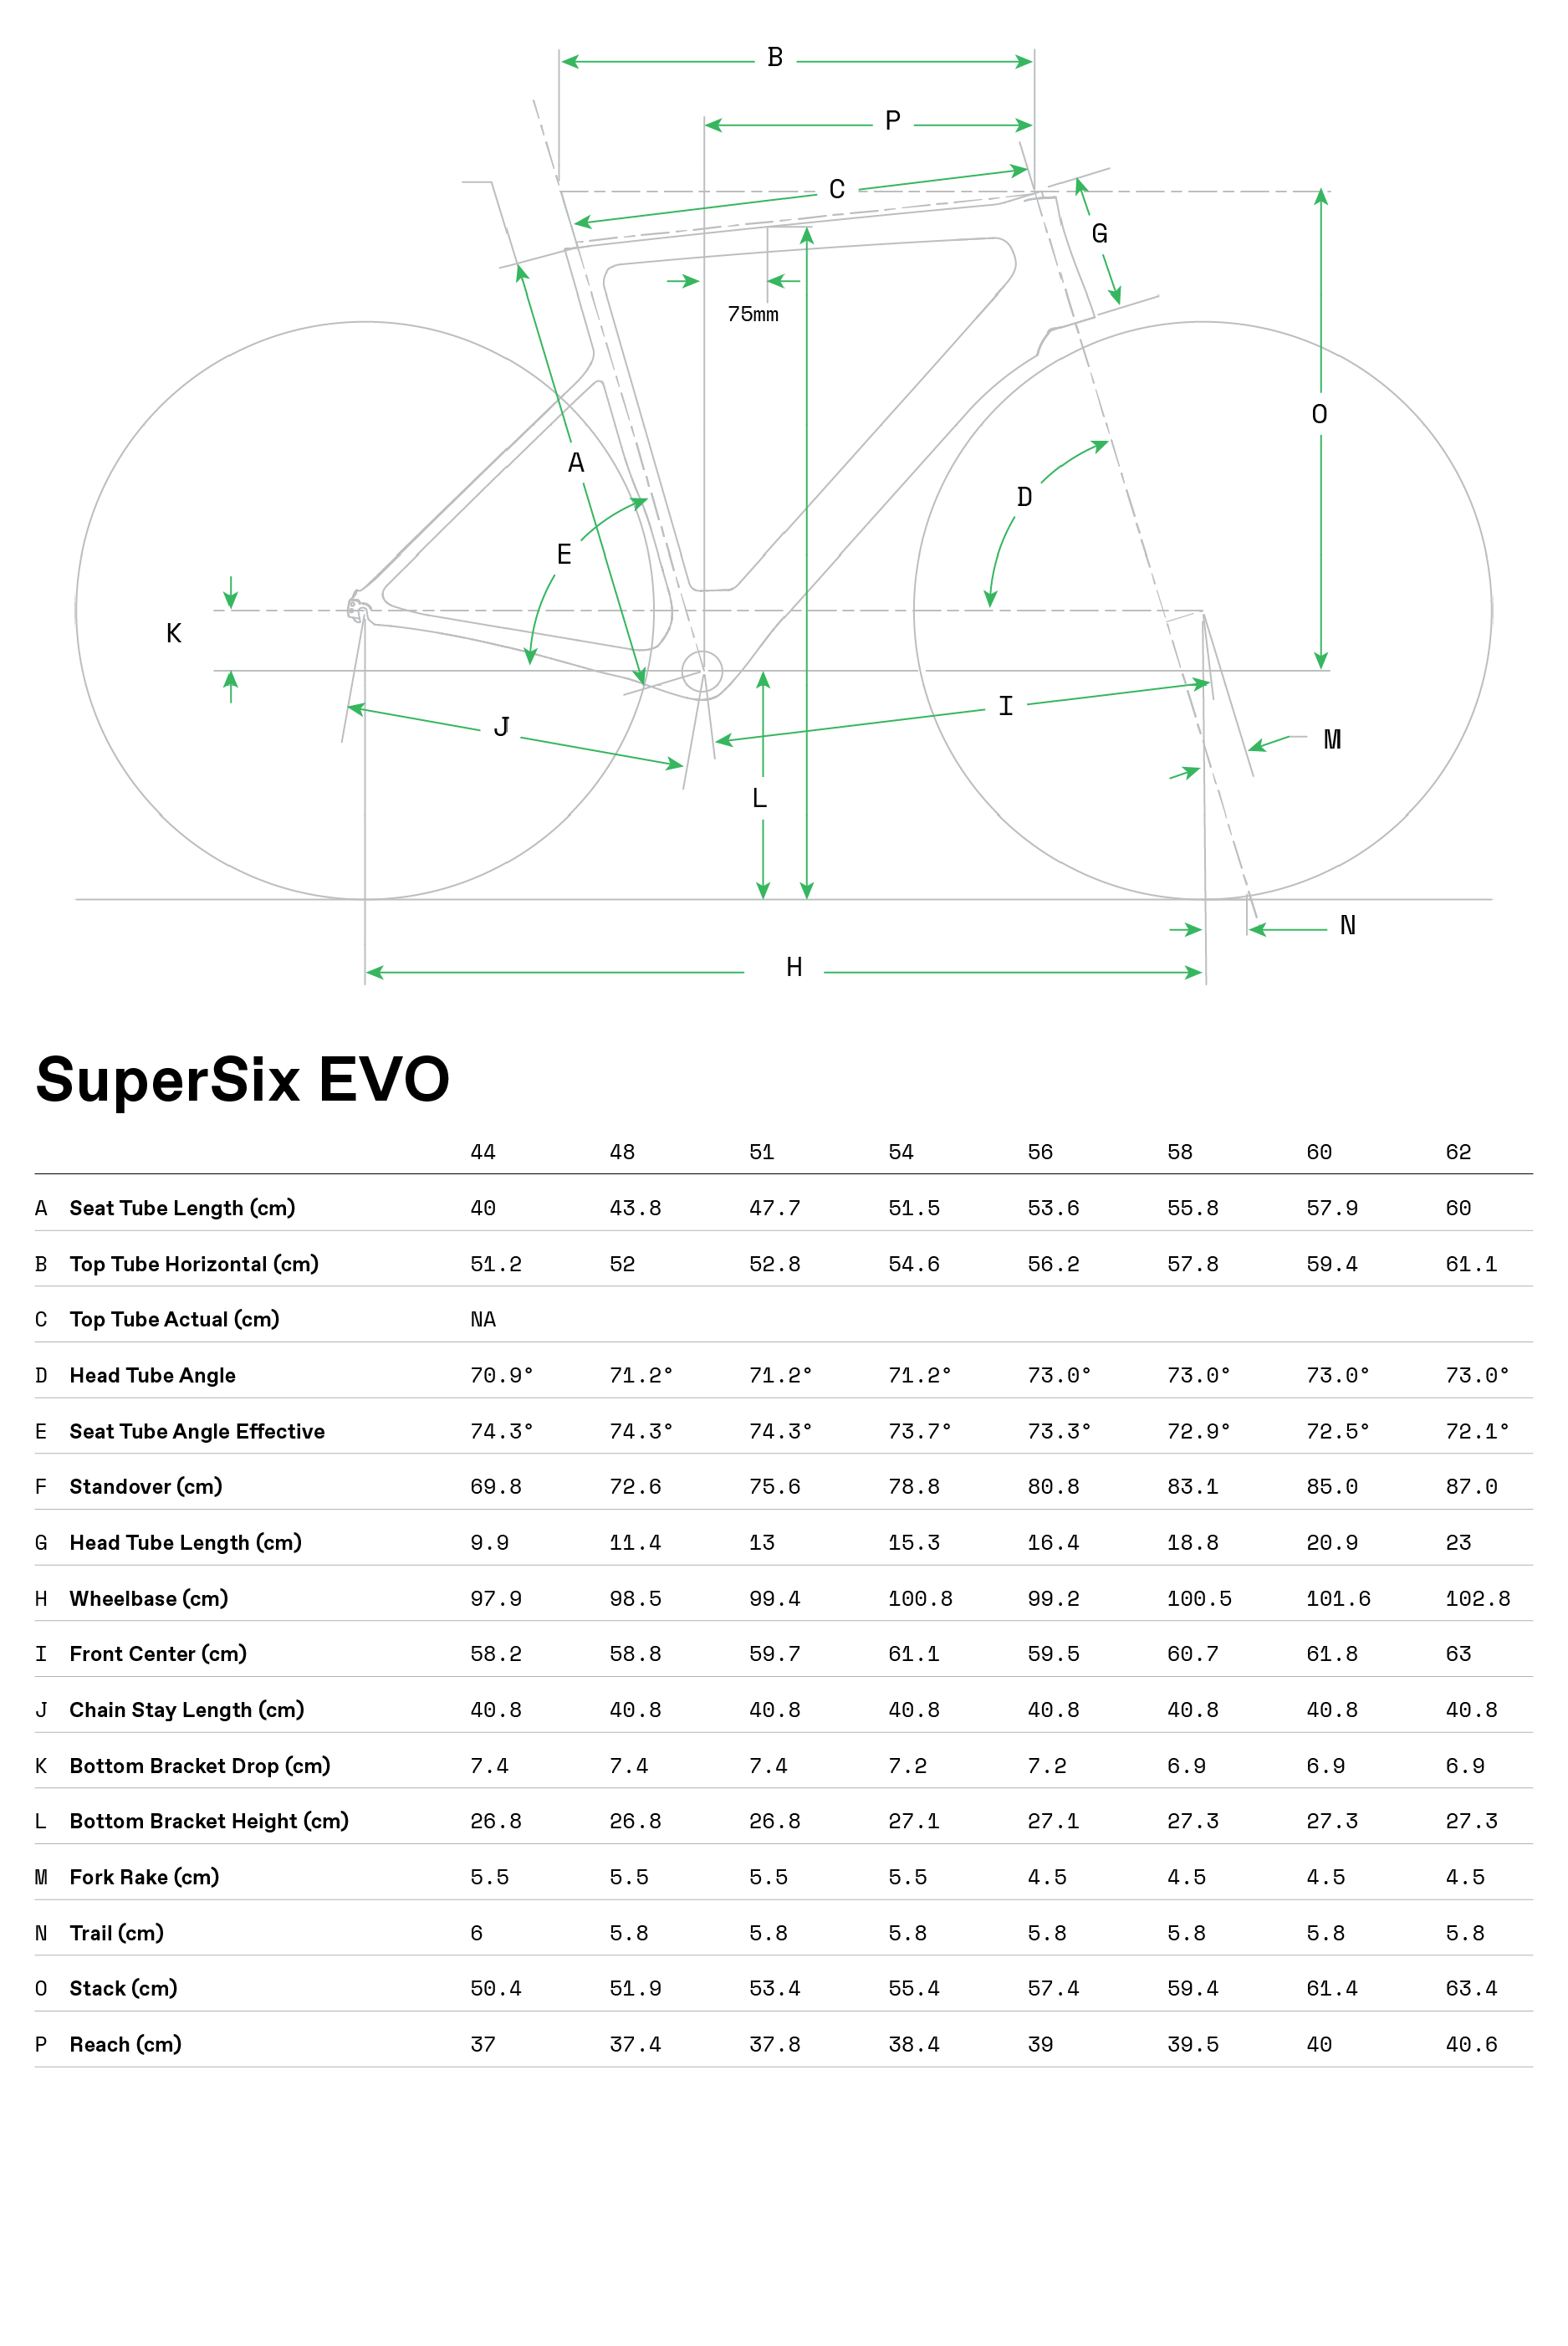 supersix evo geometry 2018